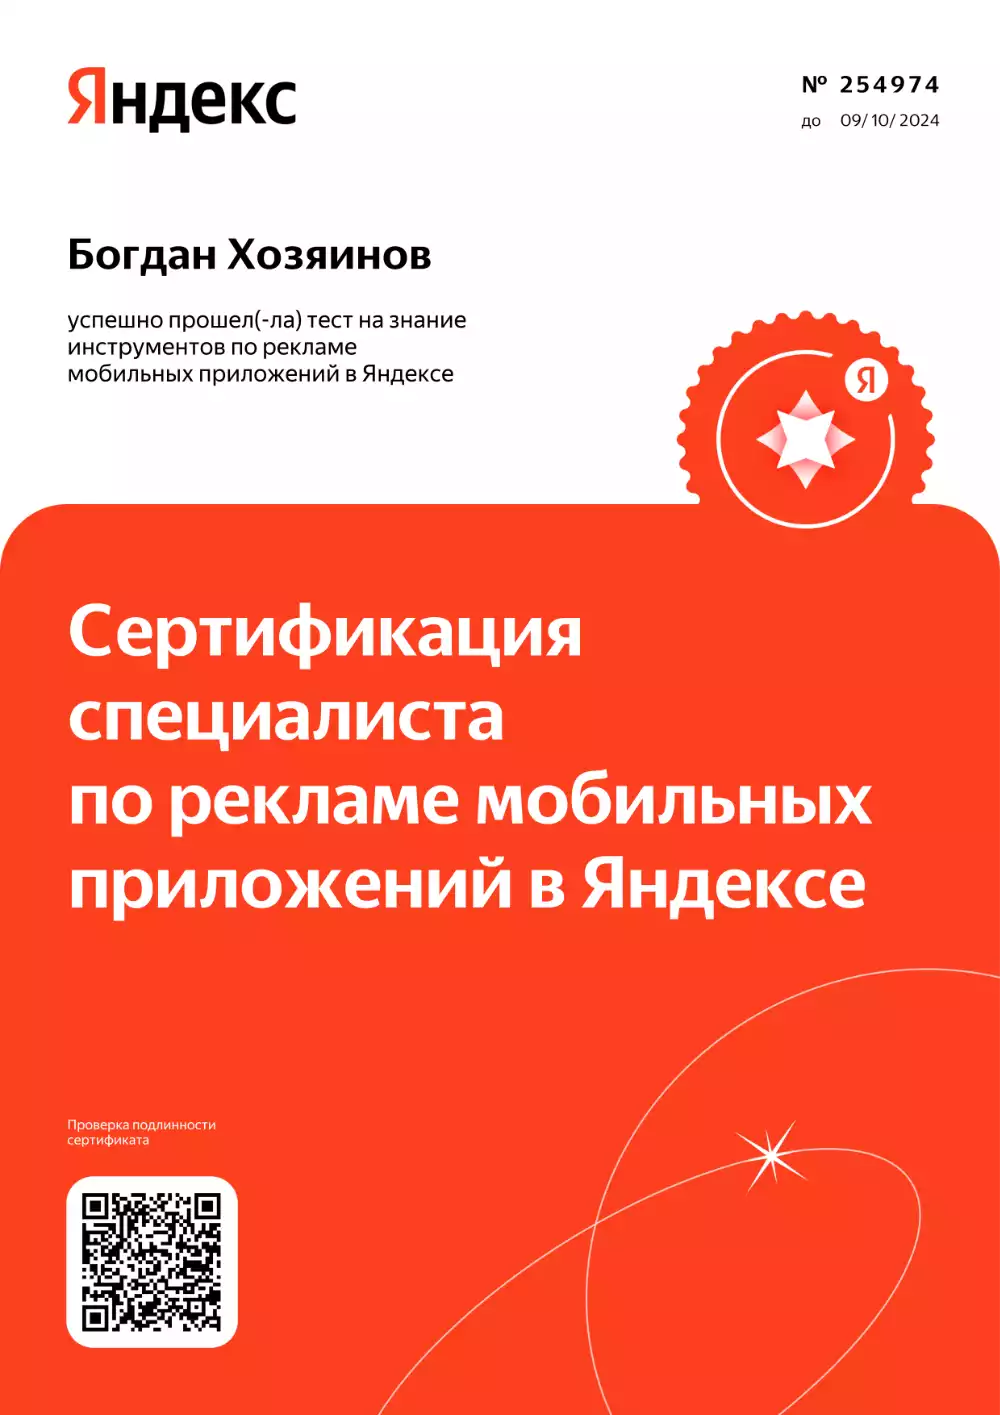 Сертификат специалиста по рекламе мобильных приложений в Яндексе